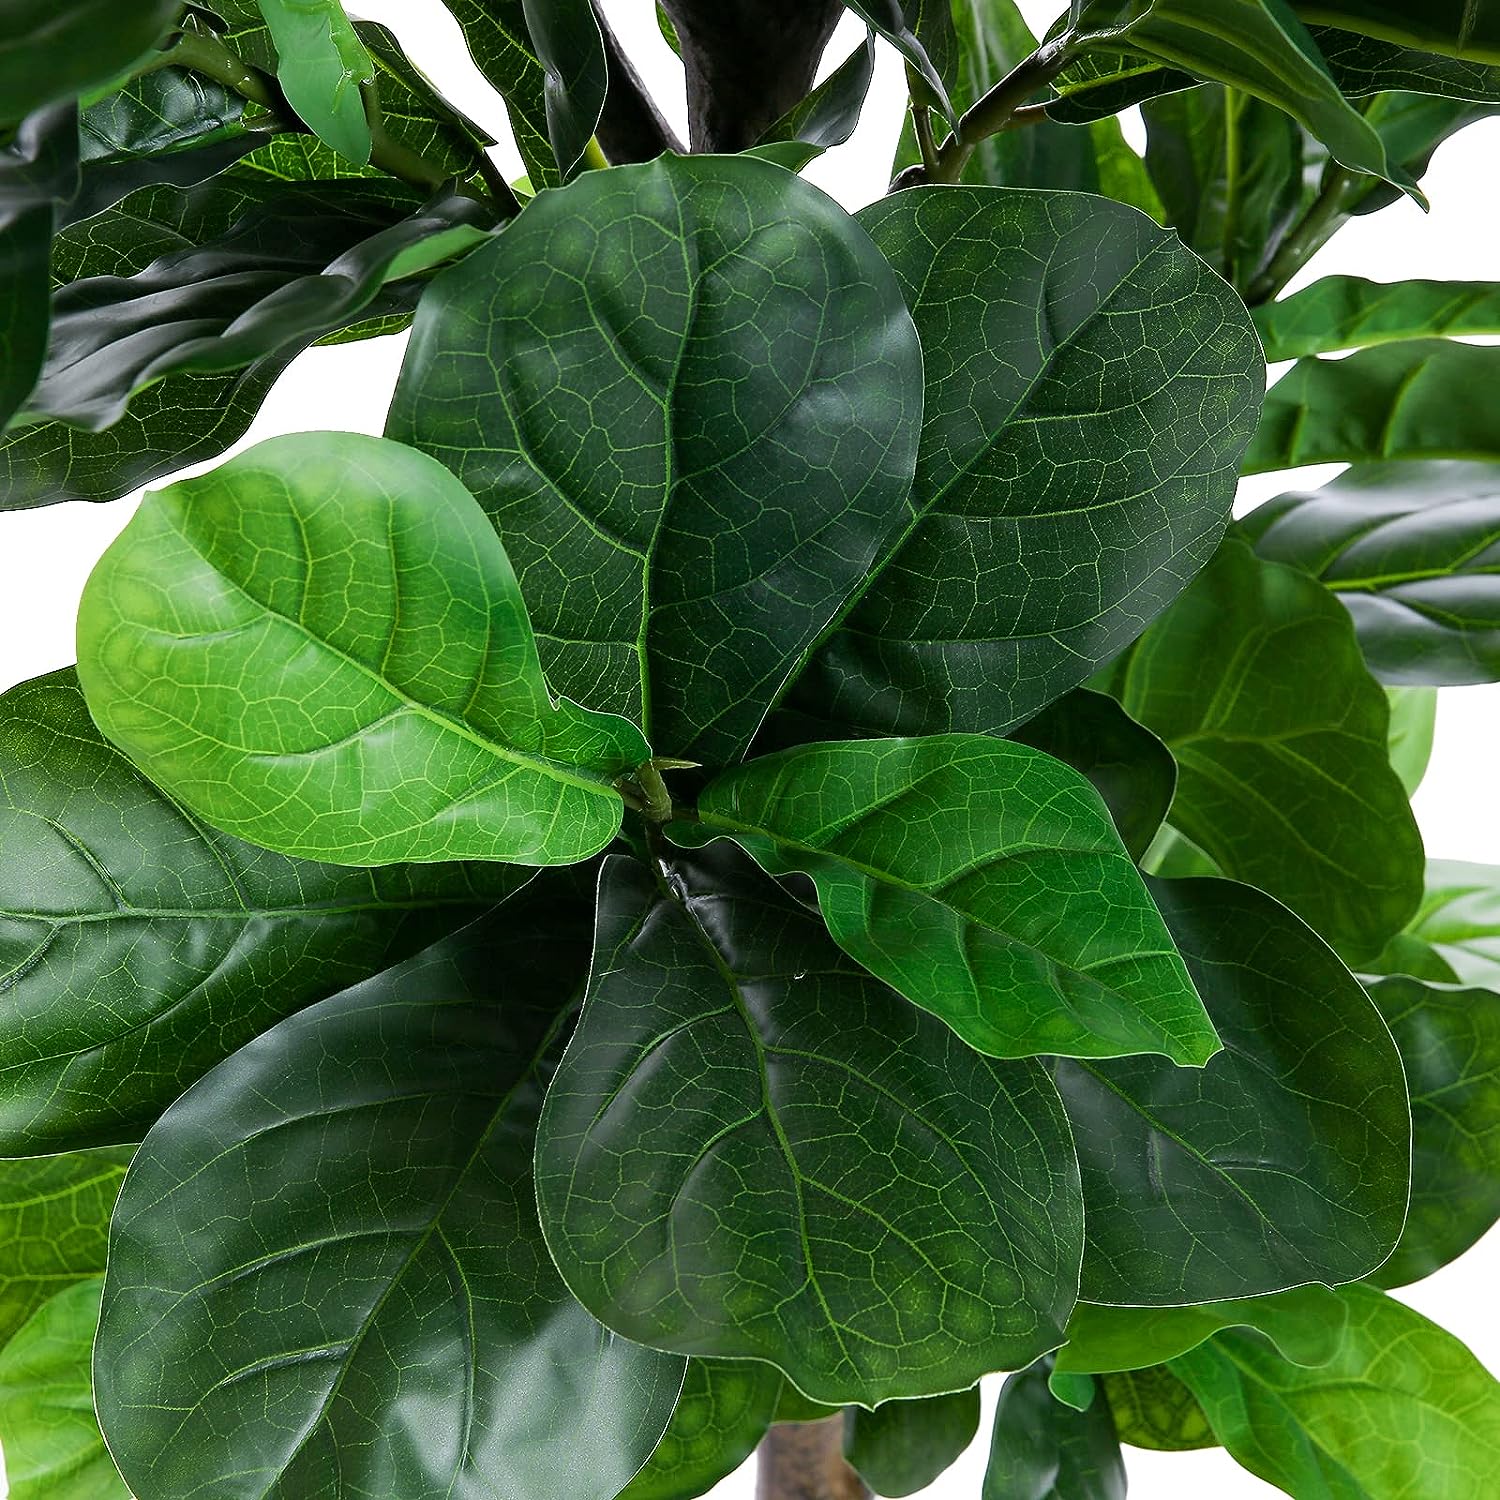 Árbol artificial de higuera de hoja de violín, planta sintética en maceta  de 50 pulgadas con hojas de tacto natural para decoración de oficina o